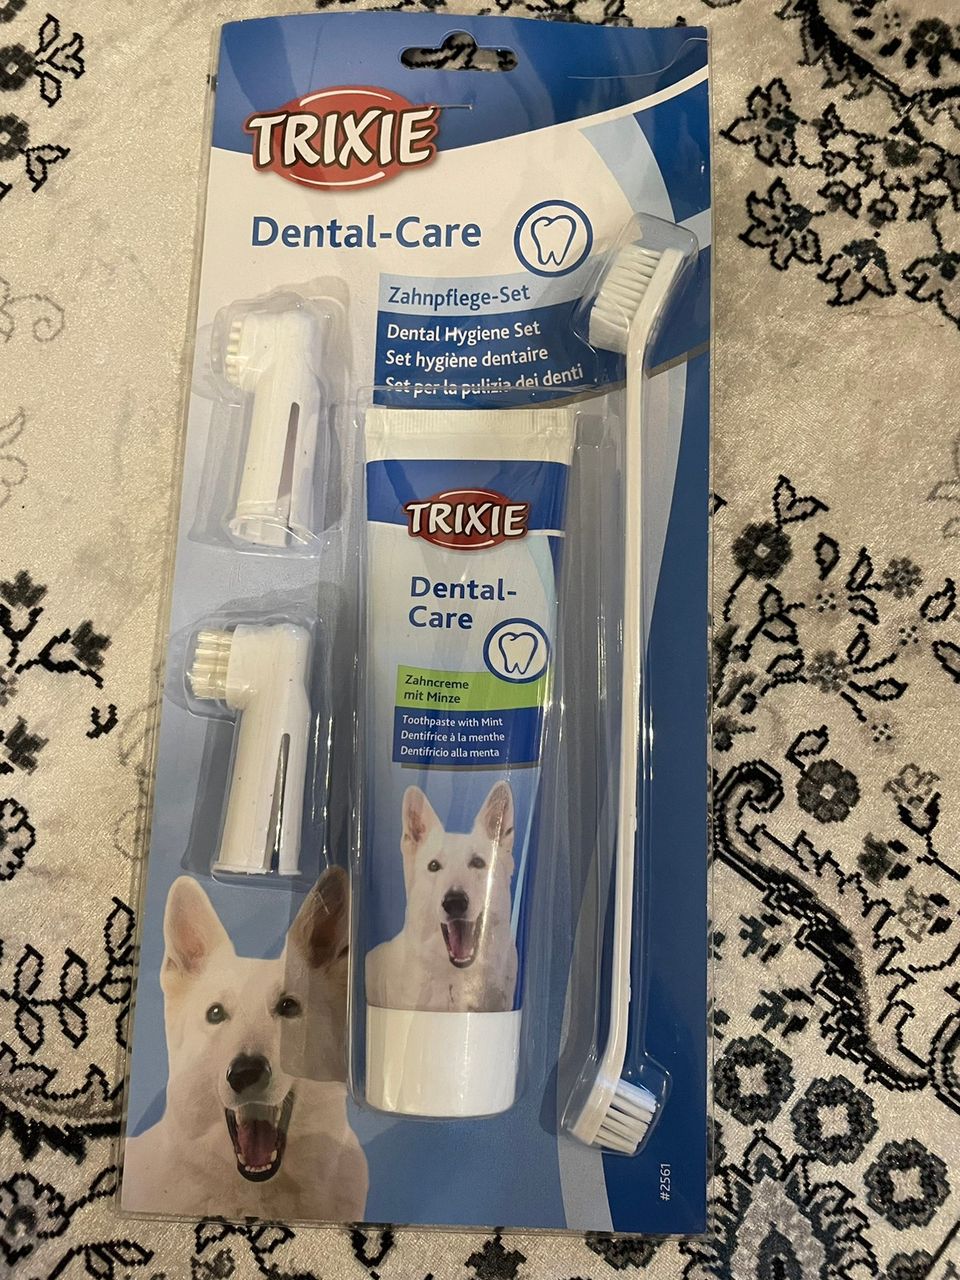 Myydän koiran hammasharjasetti